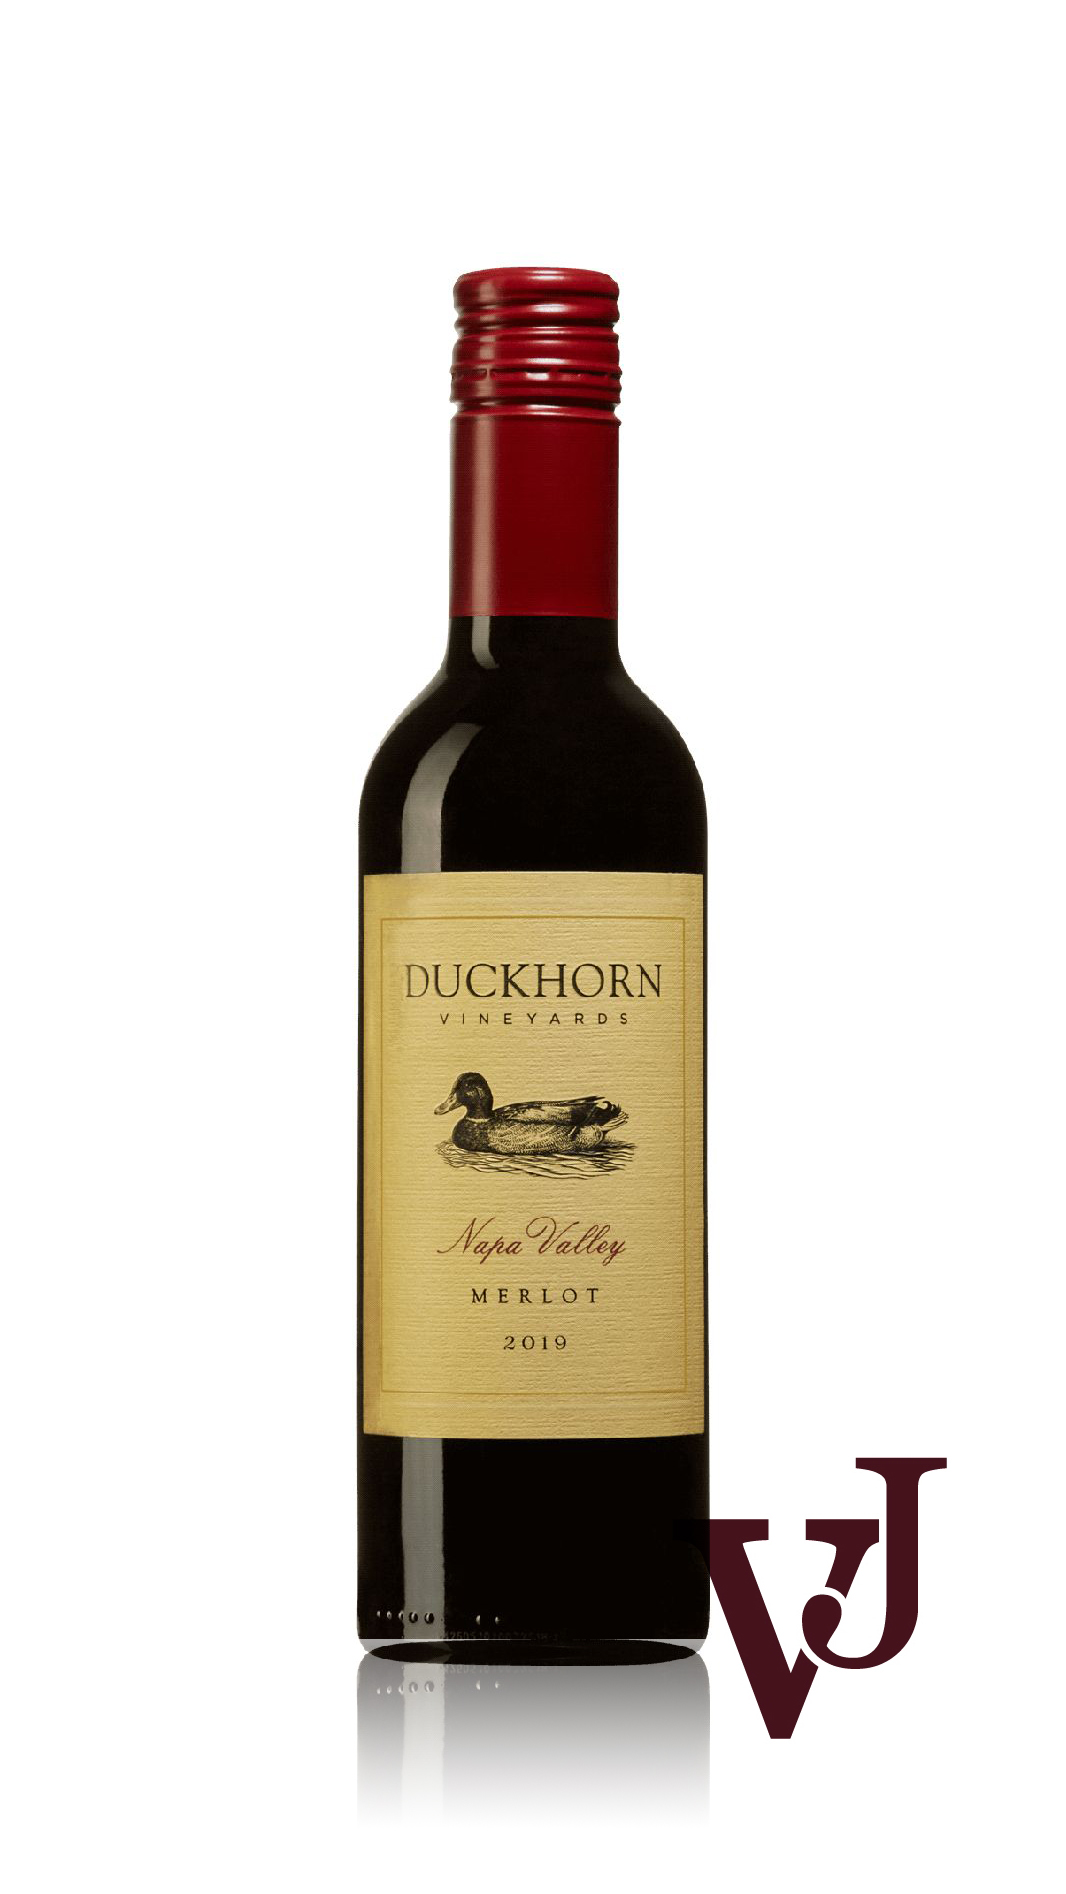 Rött Vin - Duckhorn Vineyards Napa Valley Merlot 2019 artikel nummer 9267102 från producenten Duckhorn Vineyards från området USA